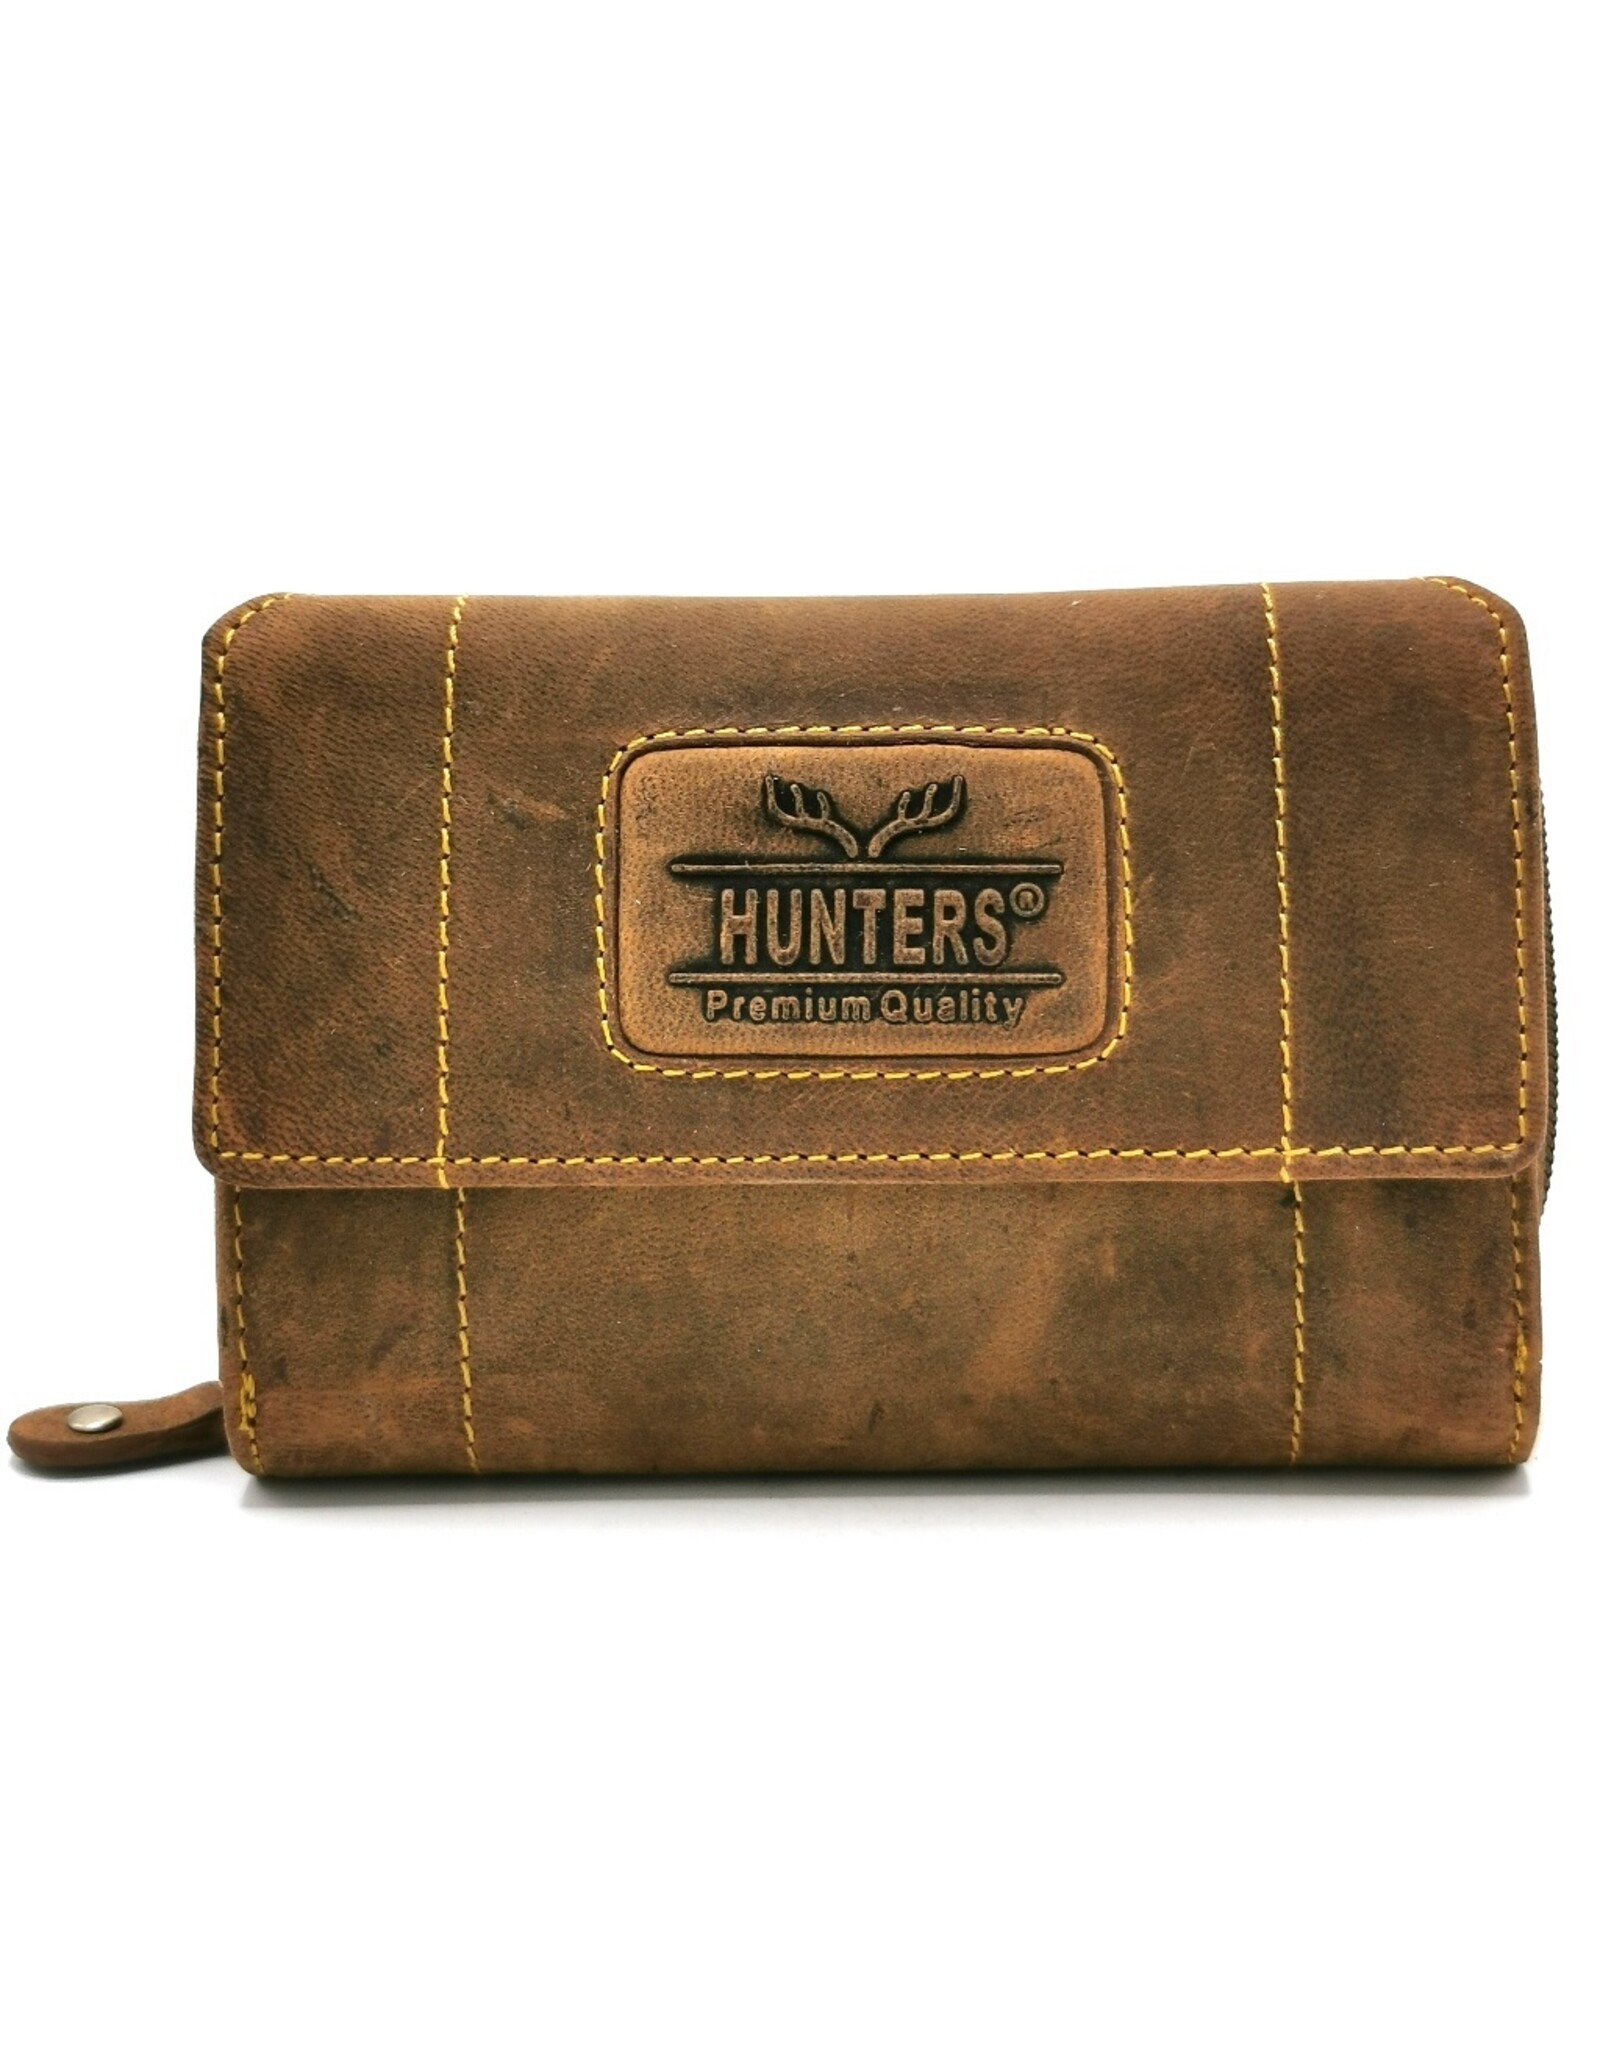 Hunters Leather Wallets -  Leather wallet Hunters - Unisex